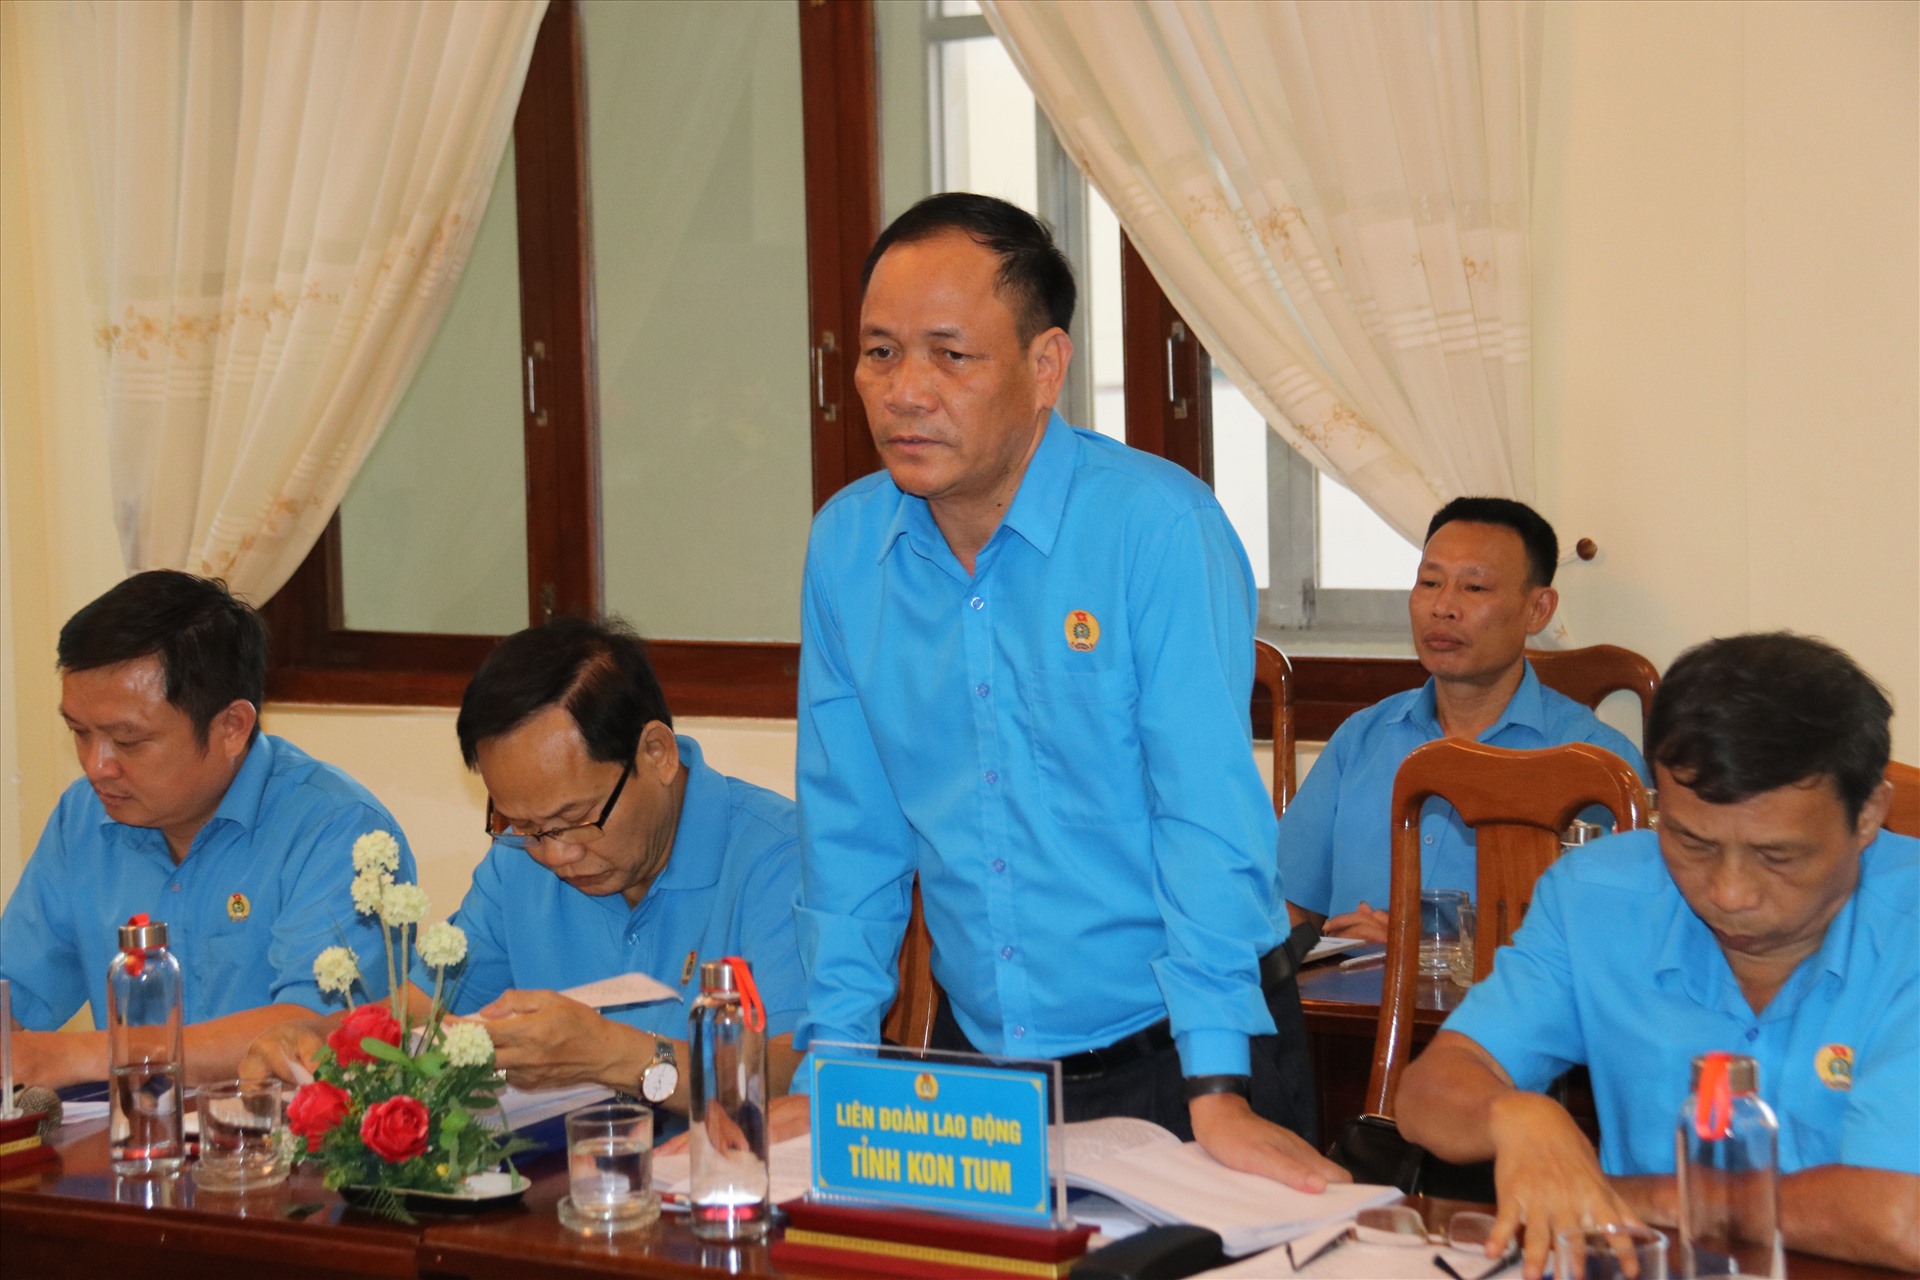 Lãnh đạo LĐLĐ tỉnh Kom Tum kiến nghị một số nội dung liên quan đến công tác chuẩn bị đại hội điểm khu vực Nam Trung Bộ và Tây Nguyên. Ảnh: Hữu Long